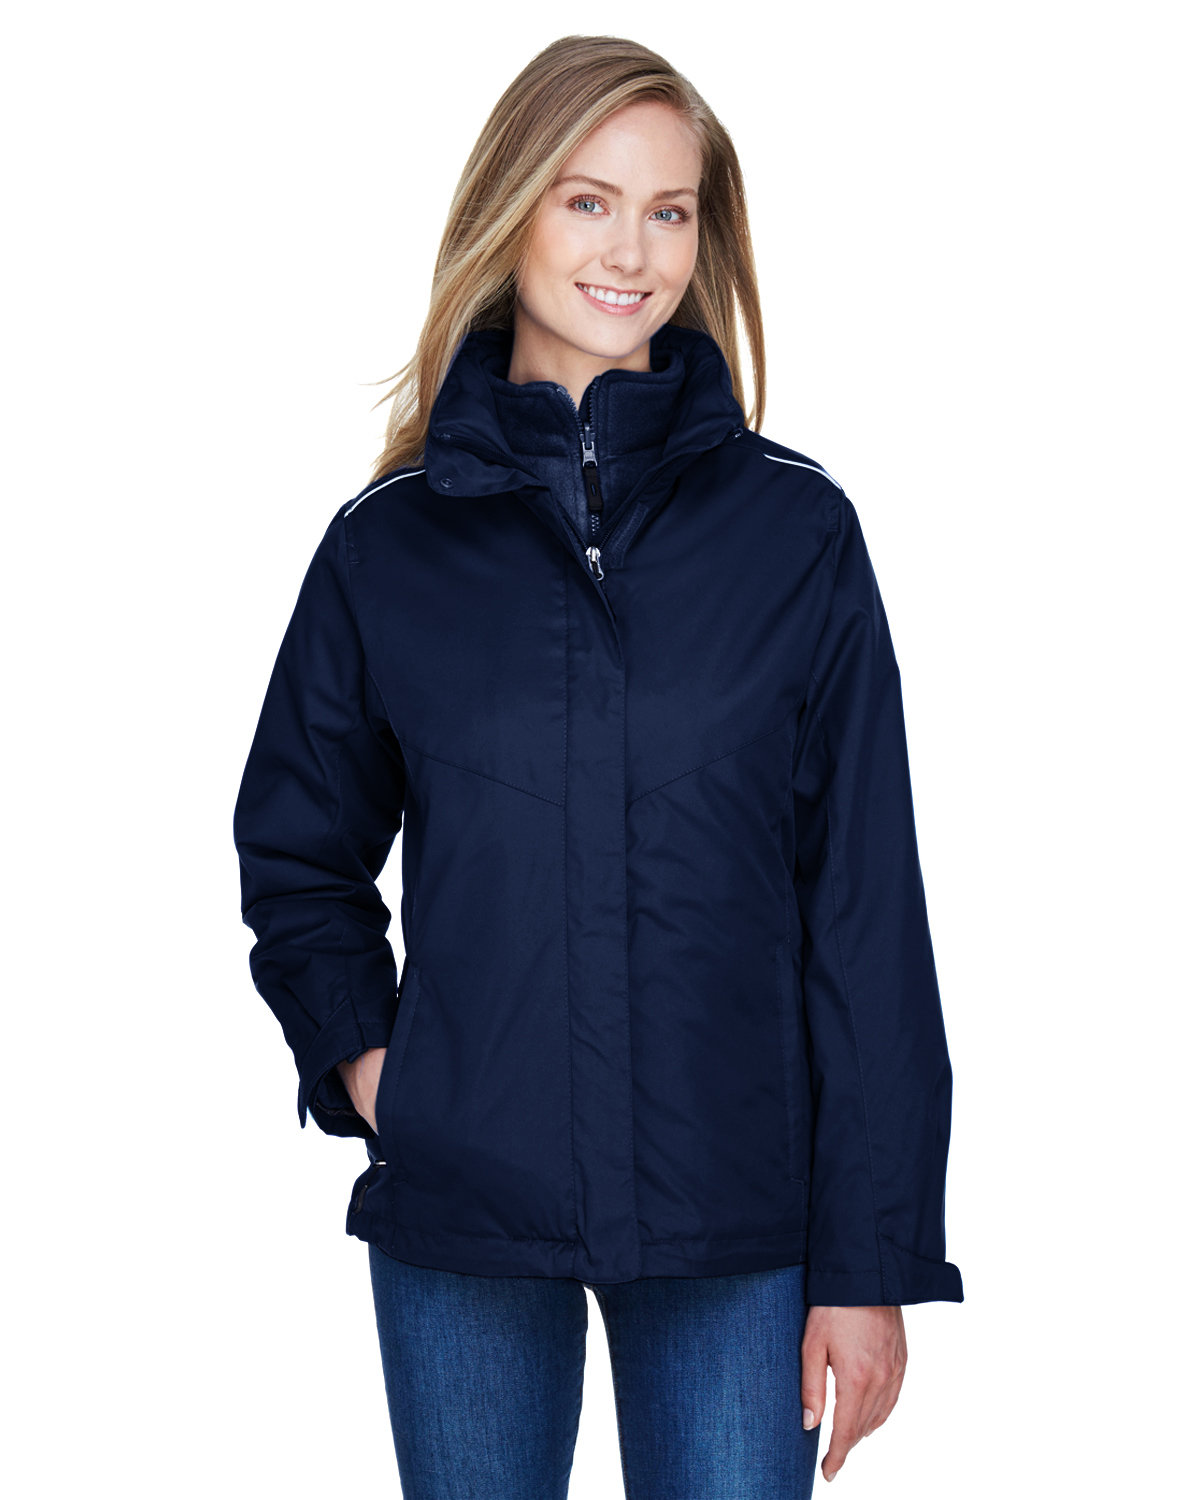 Core 365 Ladies' Region 3-in-1 Jacket with Fleece Liner CLASSIC NAVY 